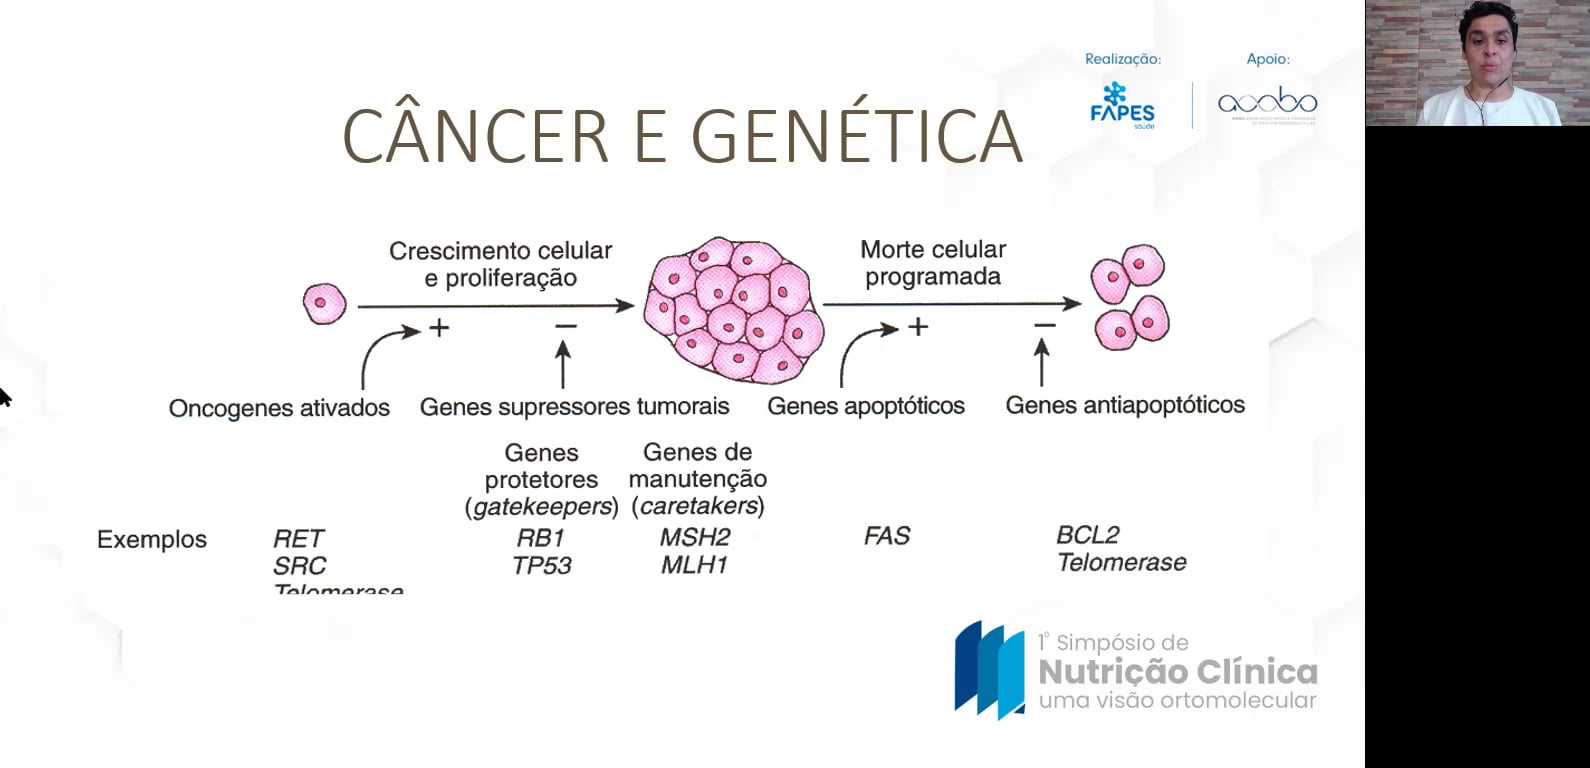 Alimentos funcionais e Epigenética na prevenção do câncer